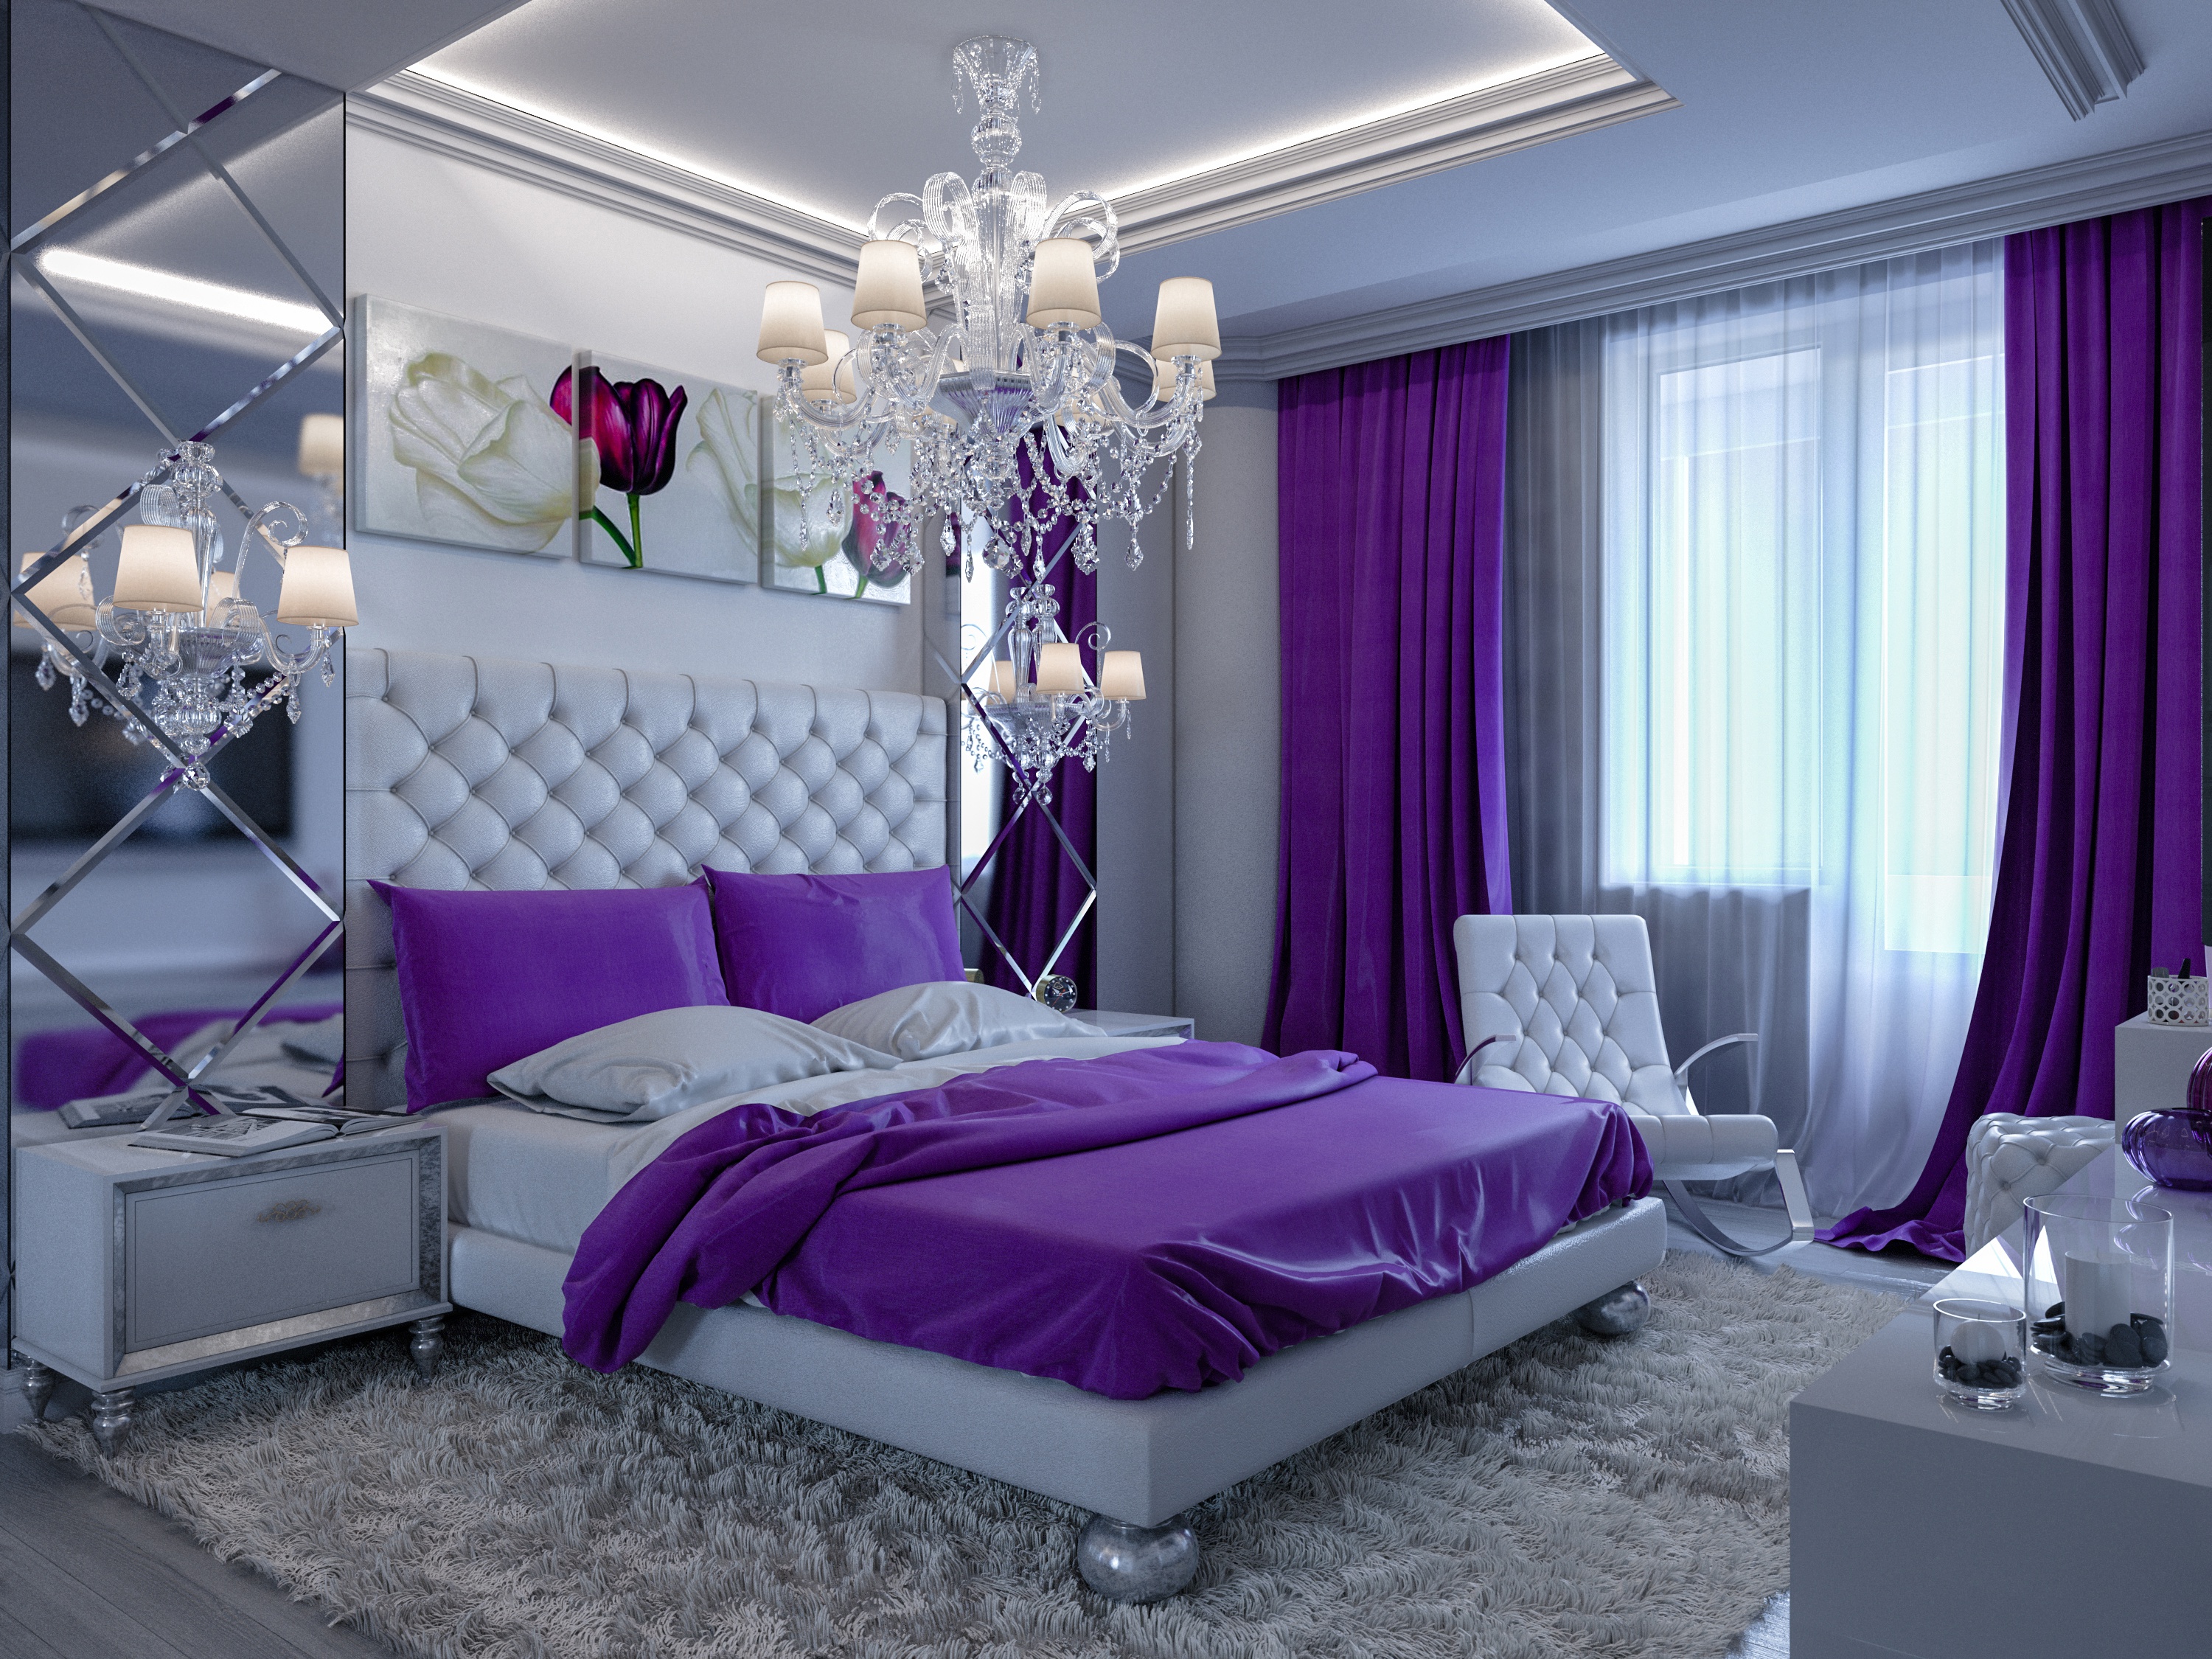 chandelier, bedroom, man made, room, bed, furniture images